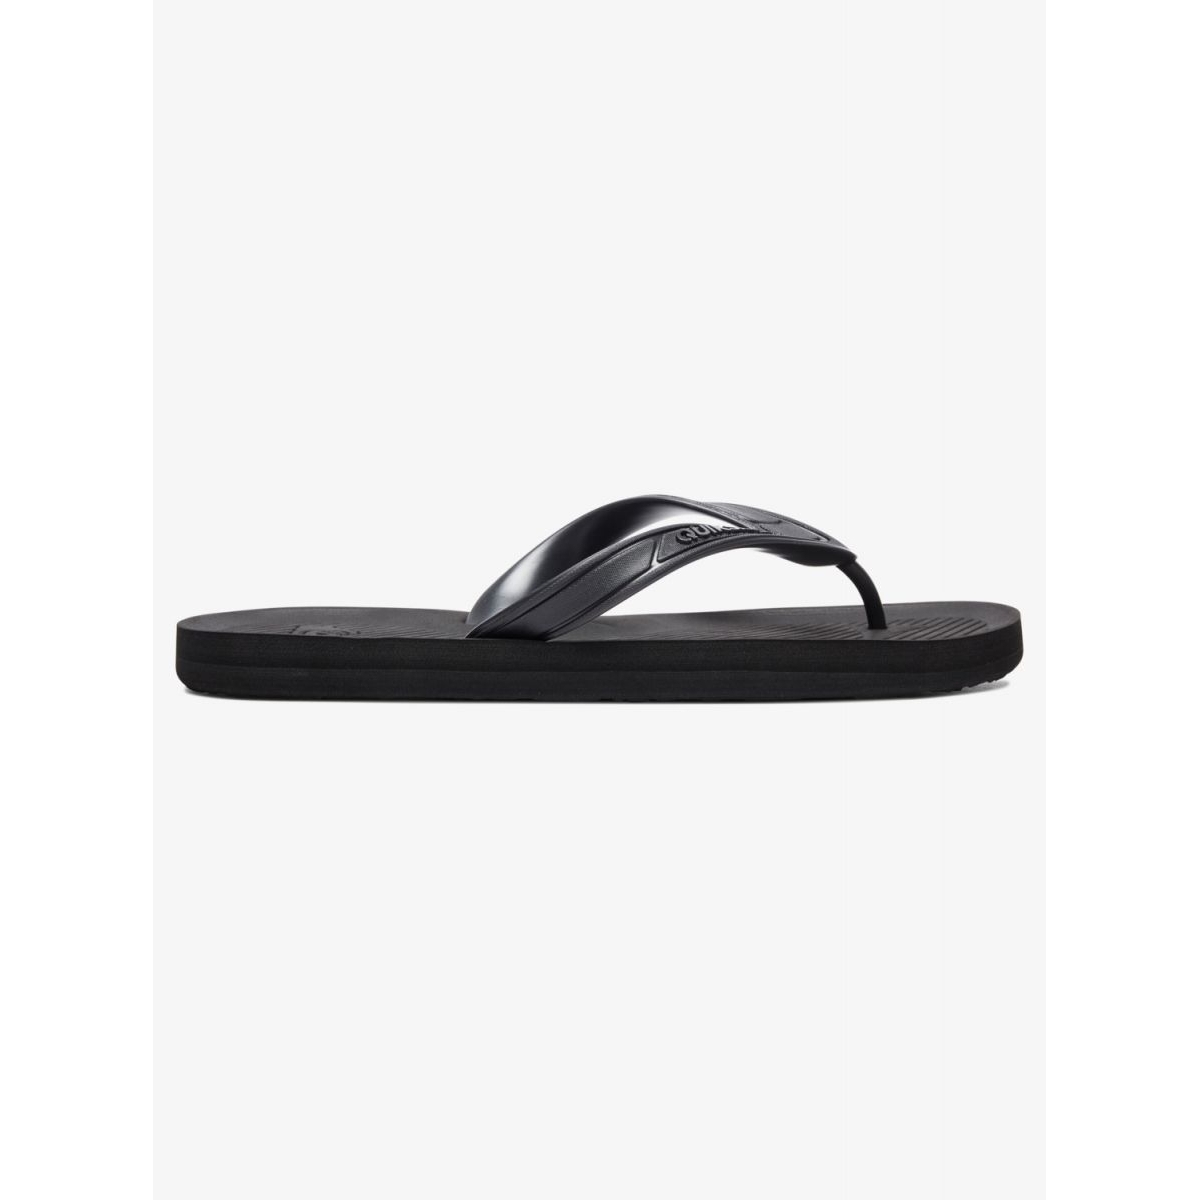 Quiksilver Men's Haleiwa Flip Flops Sandals Solid Black - AQYL100627-SBKM SOLID BLACK - SOLID BLACK, 10